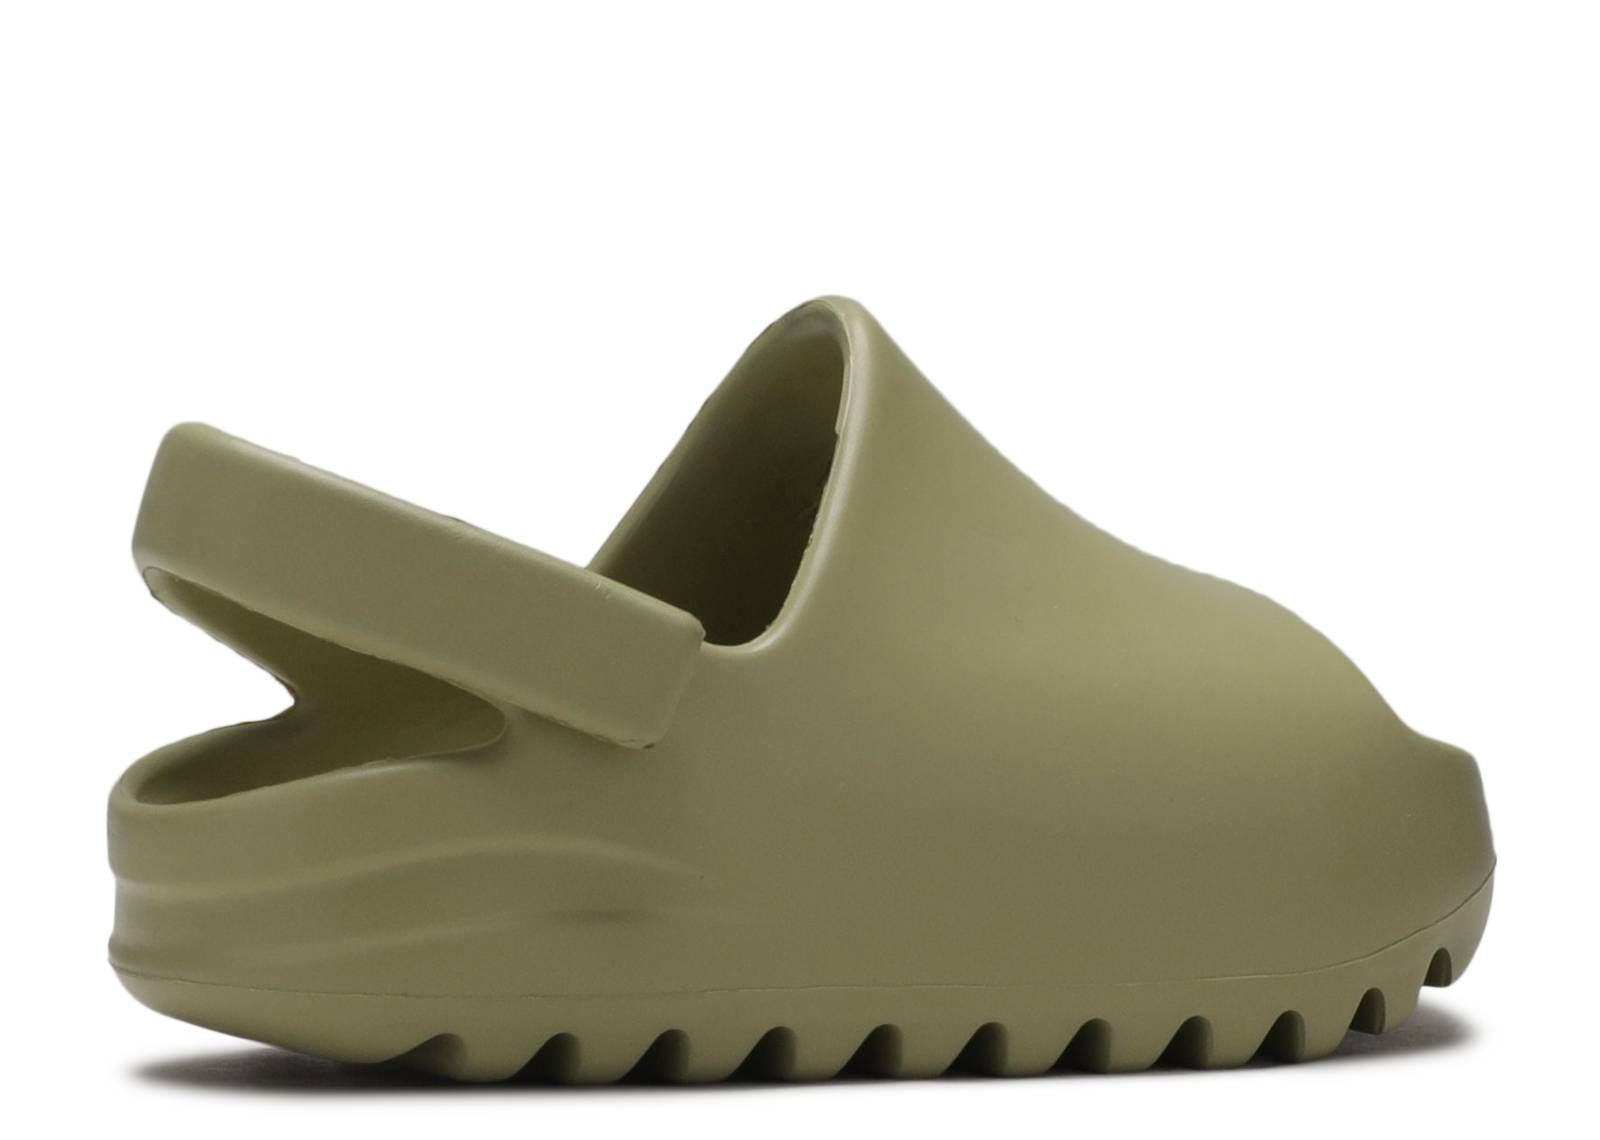 Desert Sand Release Date SBD Bone adidas Yeezy Slide Resin